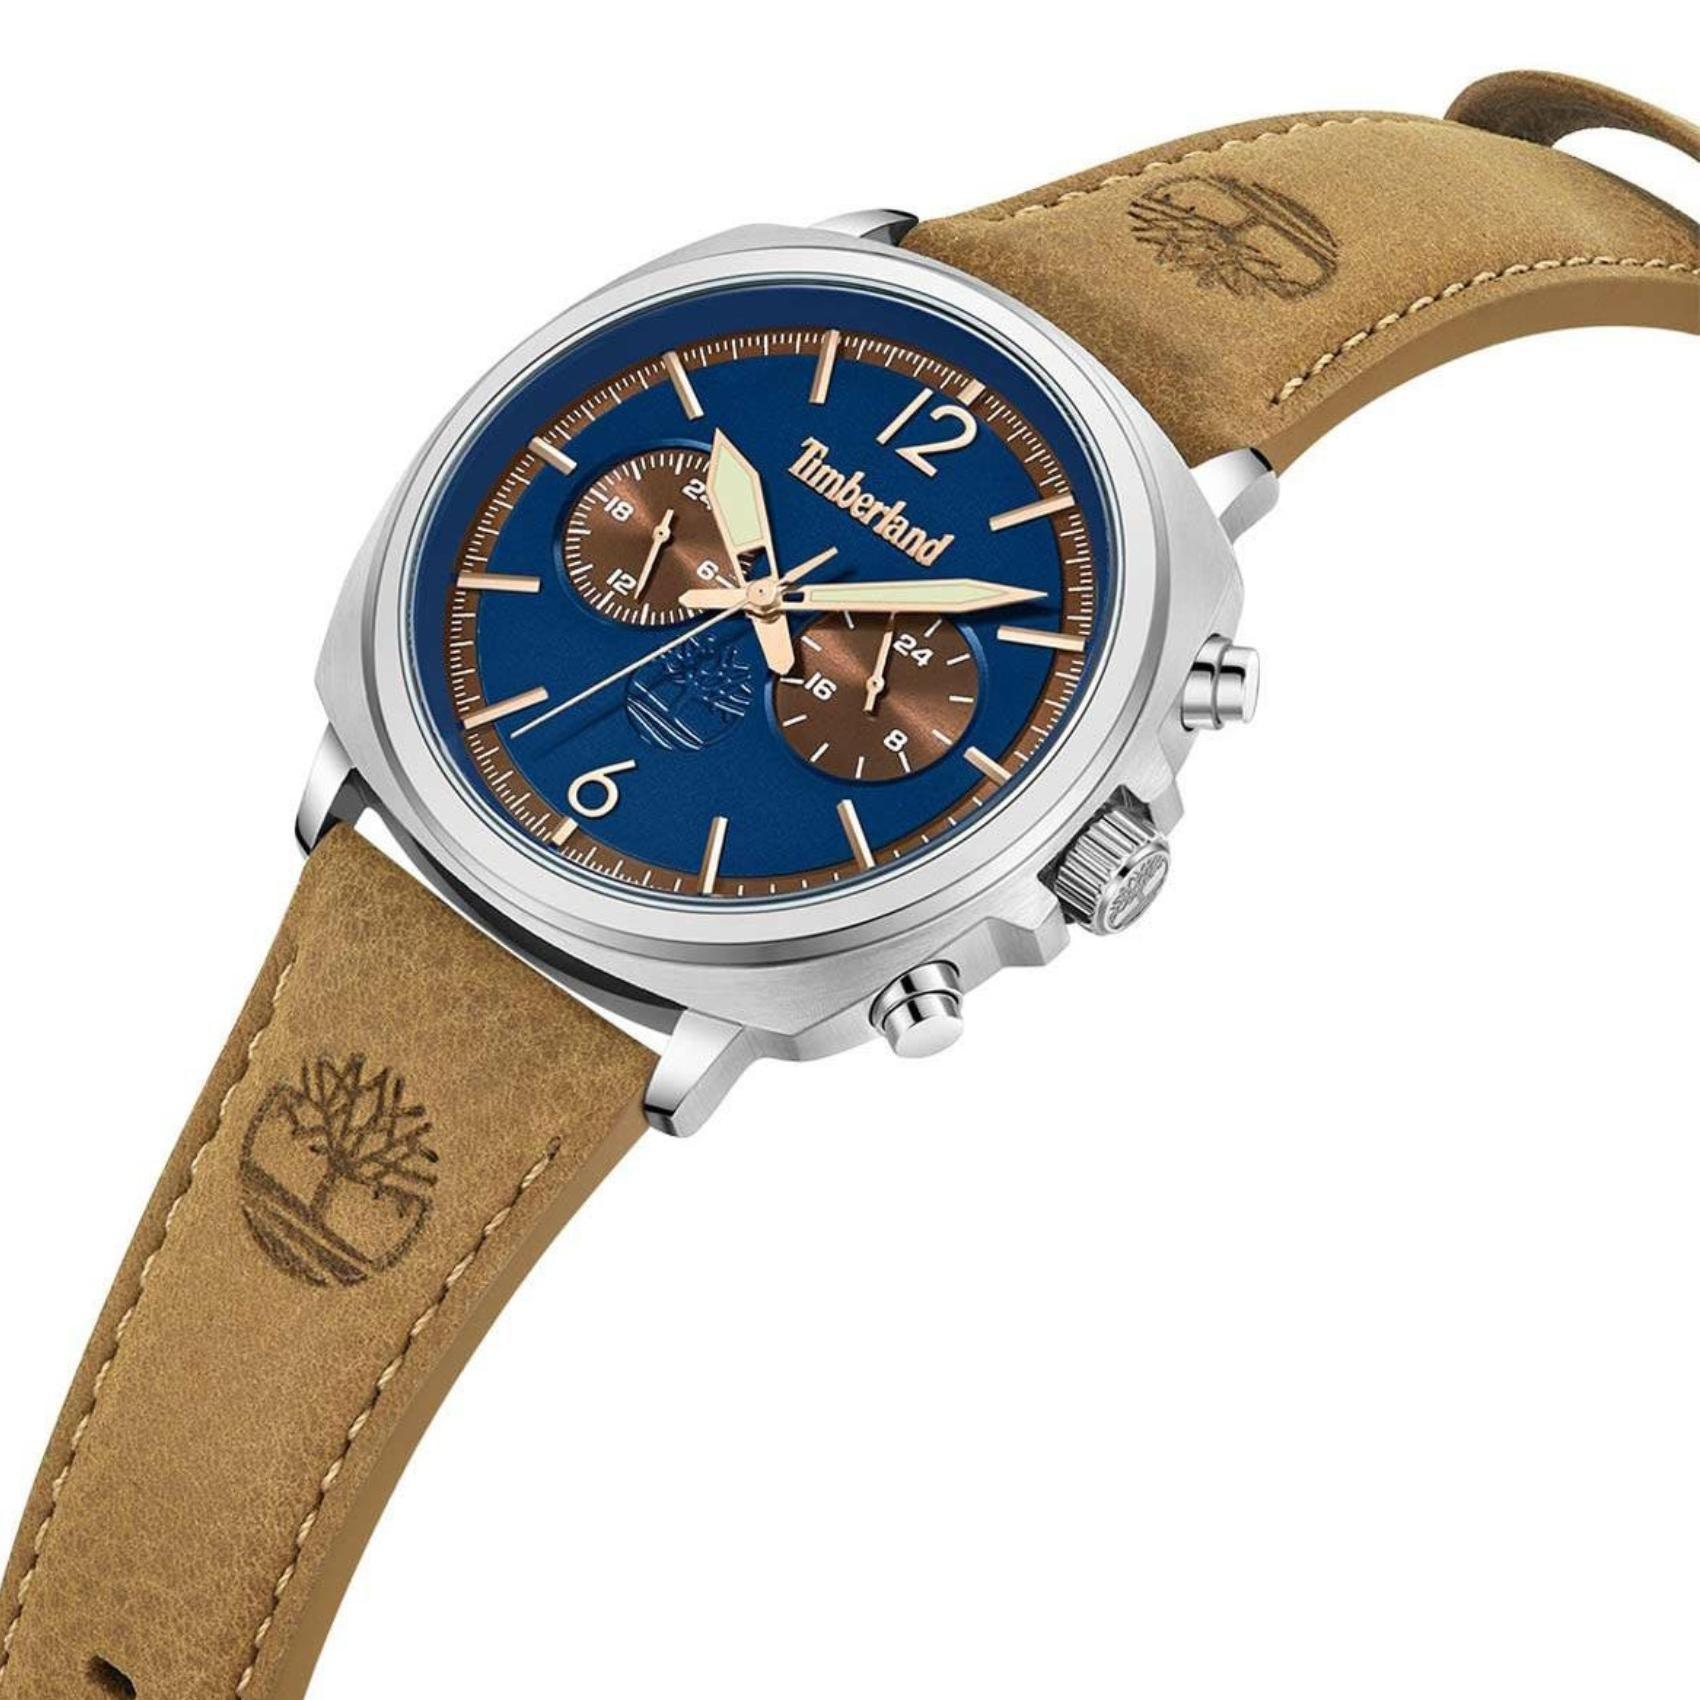 Αντρικό ρολόι Timberland Williston Small TDWGF0028204 Dual Time με ταμπά δερμάτινο λουράκι και μπλε καντράν διαμέτρου 43.5mm με ημερομηνία.